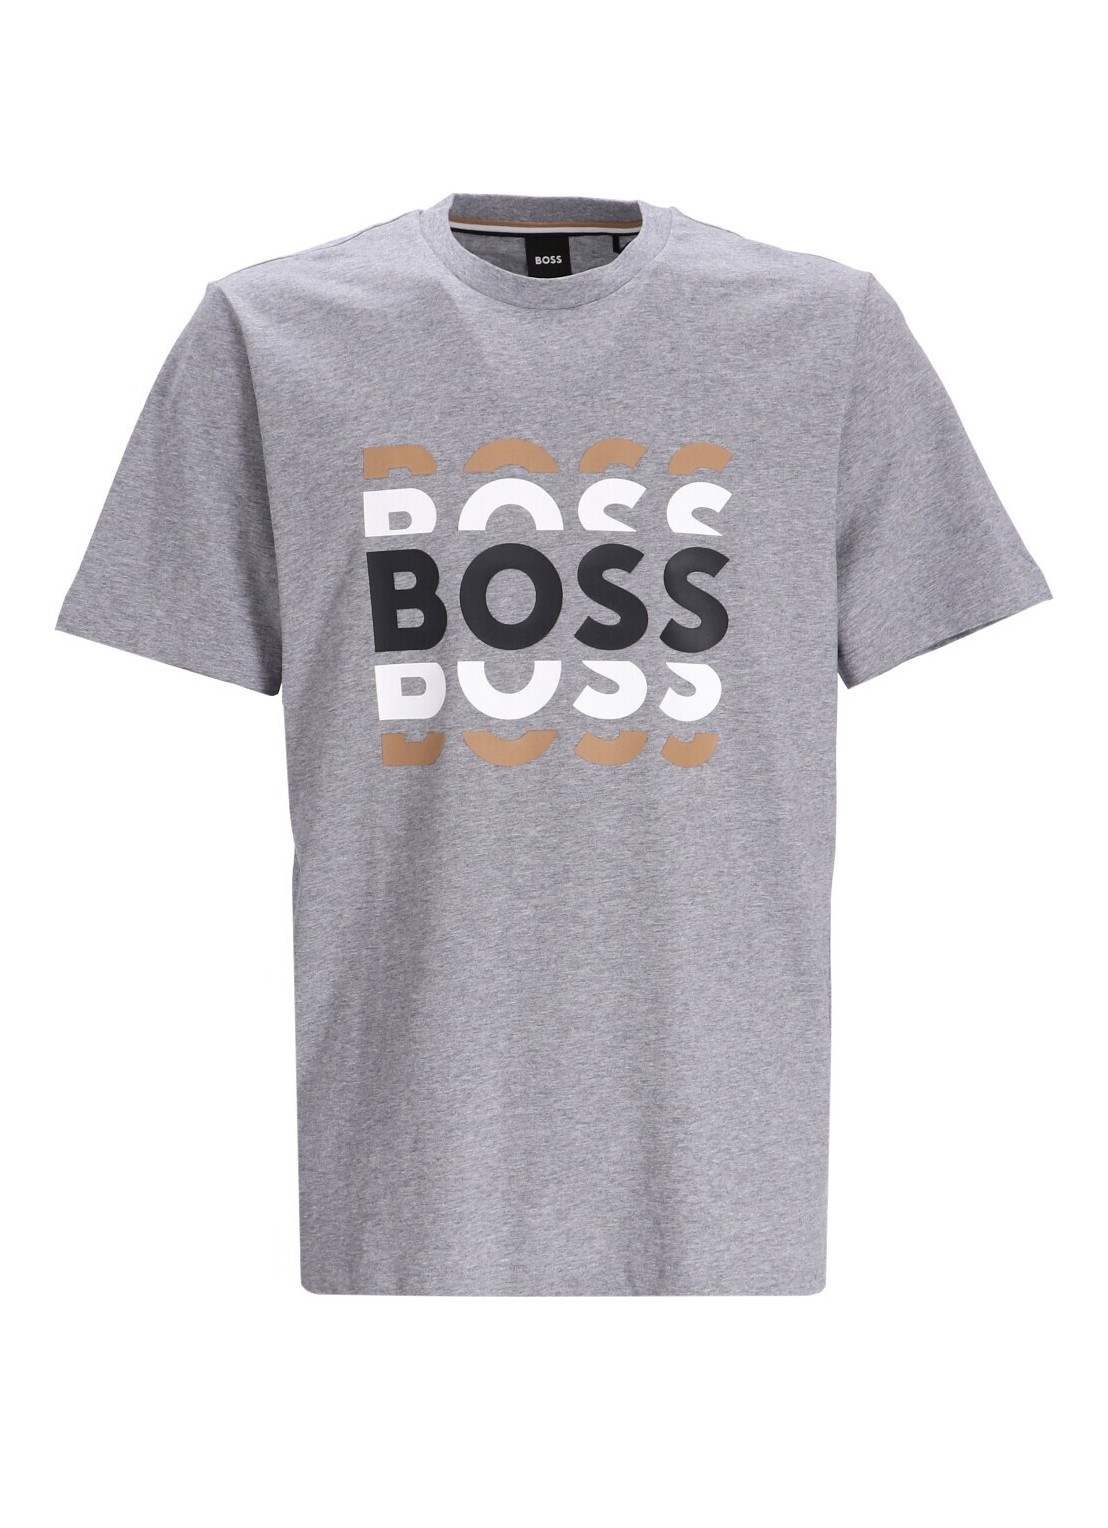 Camiseta boss t-shirt man tiburt 414 50495735 041 talla L
 